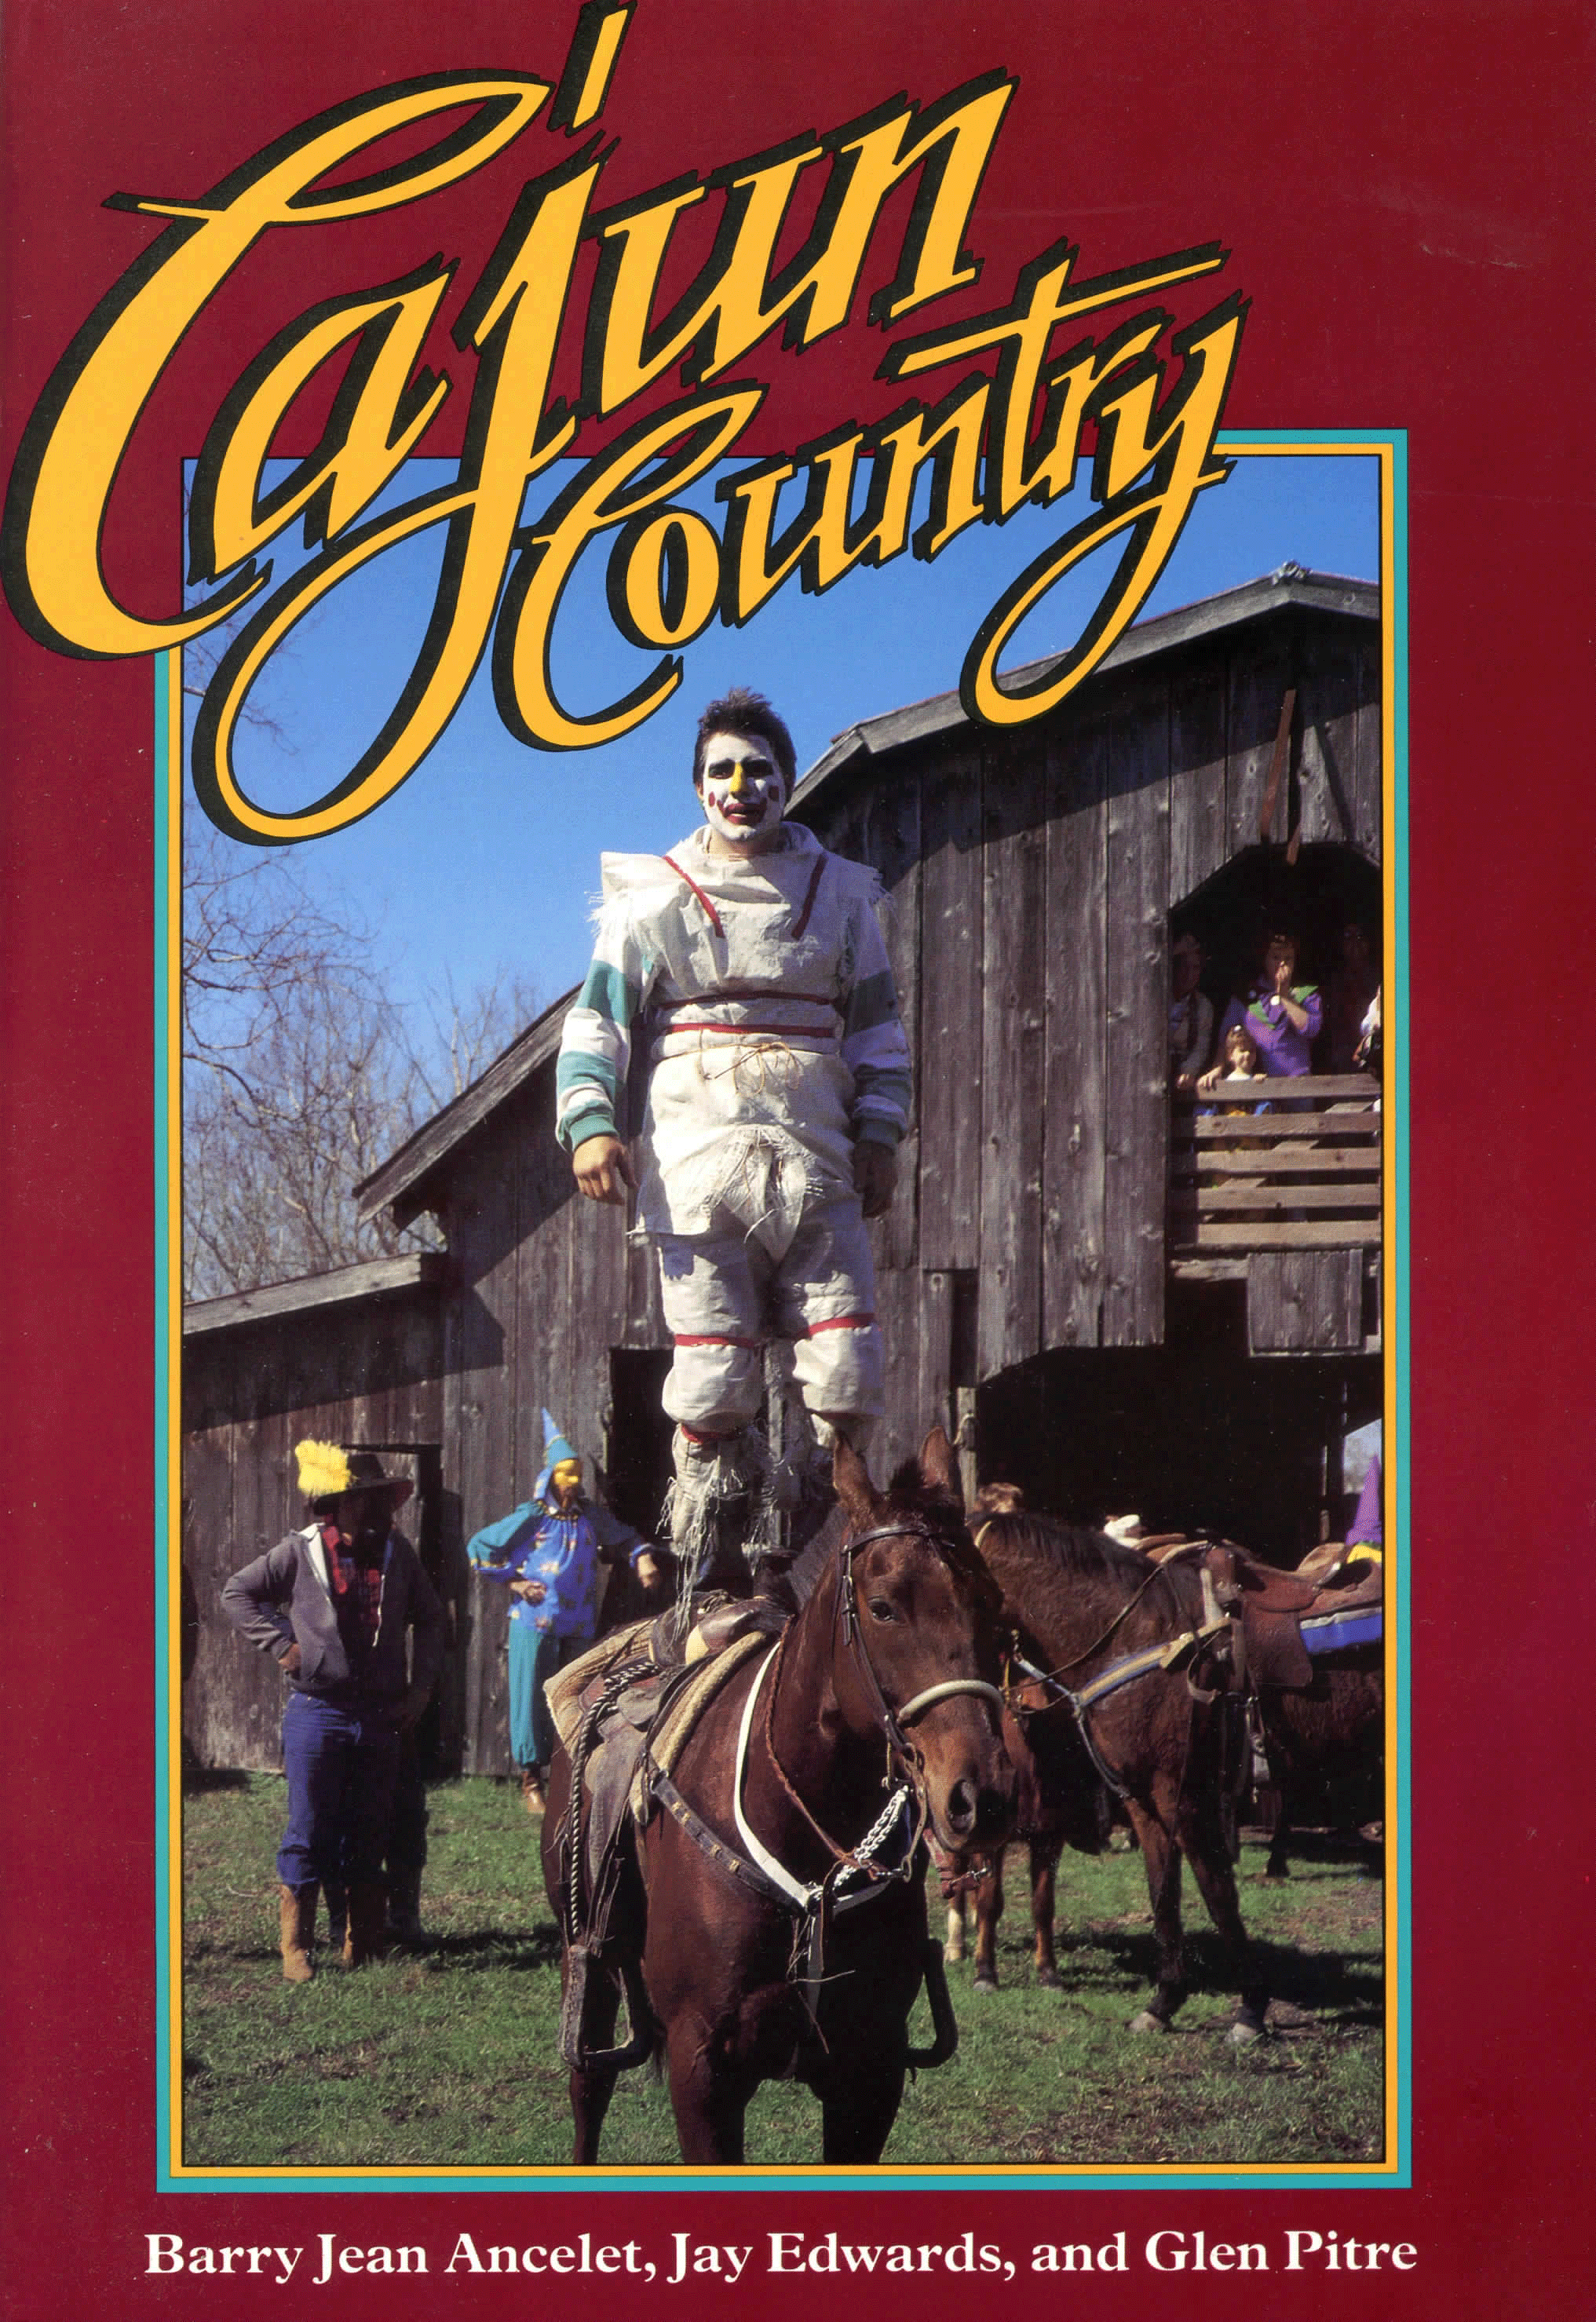 BKS Cajun Country CBP-books004.png